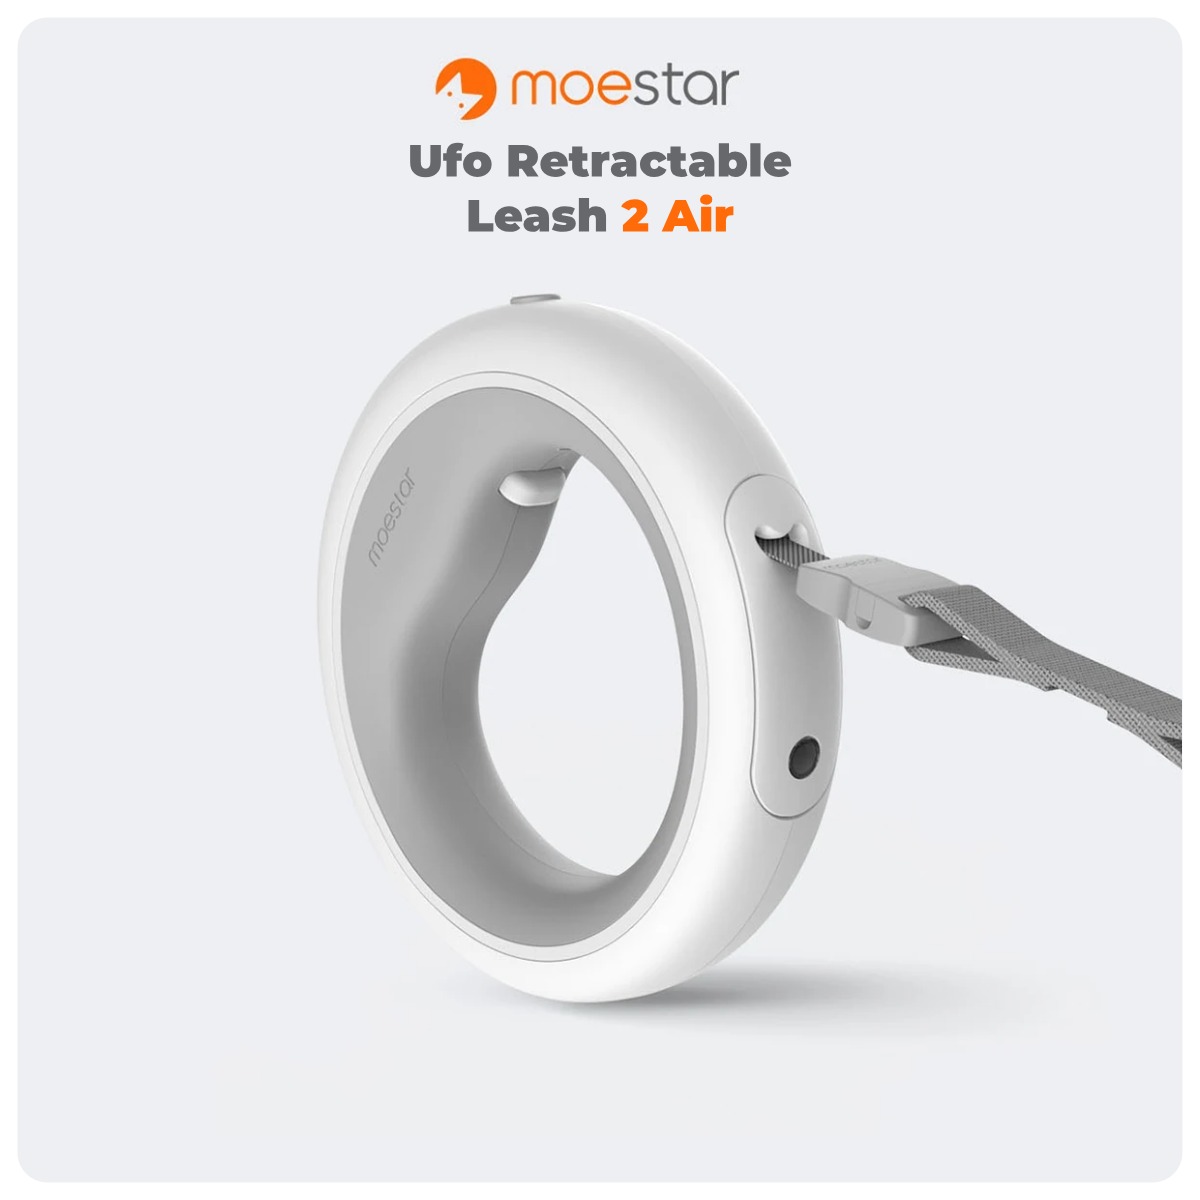 Moestar-Ufo-Retractable-Leash-2-Air-01